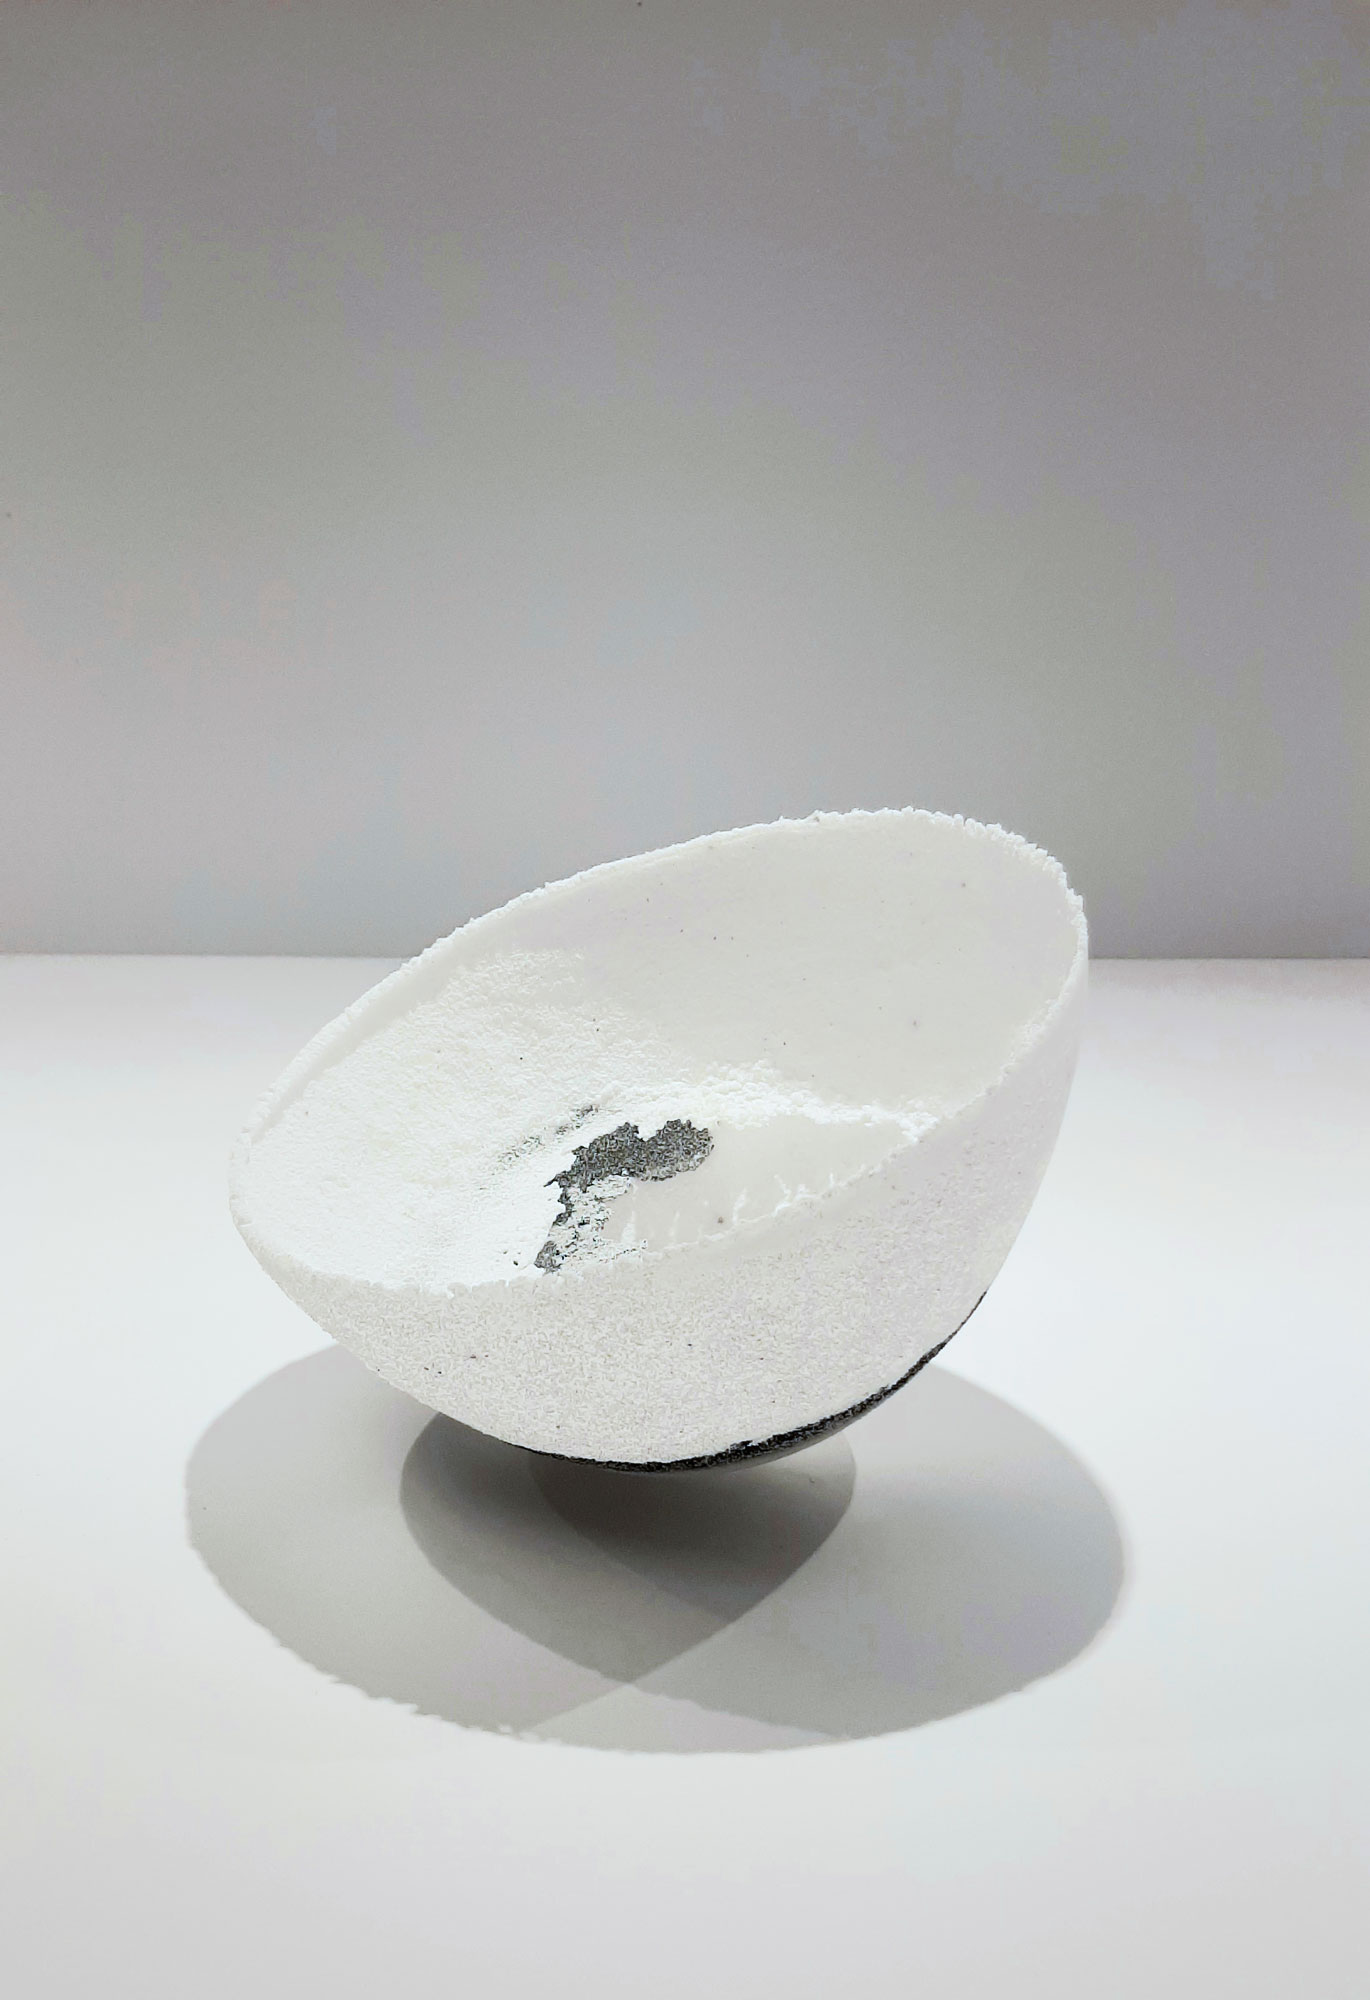 Francine Delmotte - Sans titre 2. Bol. Pâte de verre blanc estampée, ligne noire, strates intérieures - ∅21 x 14 cm 